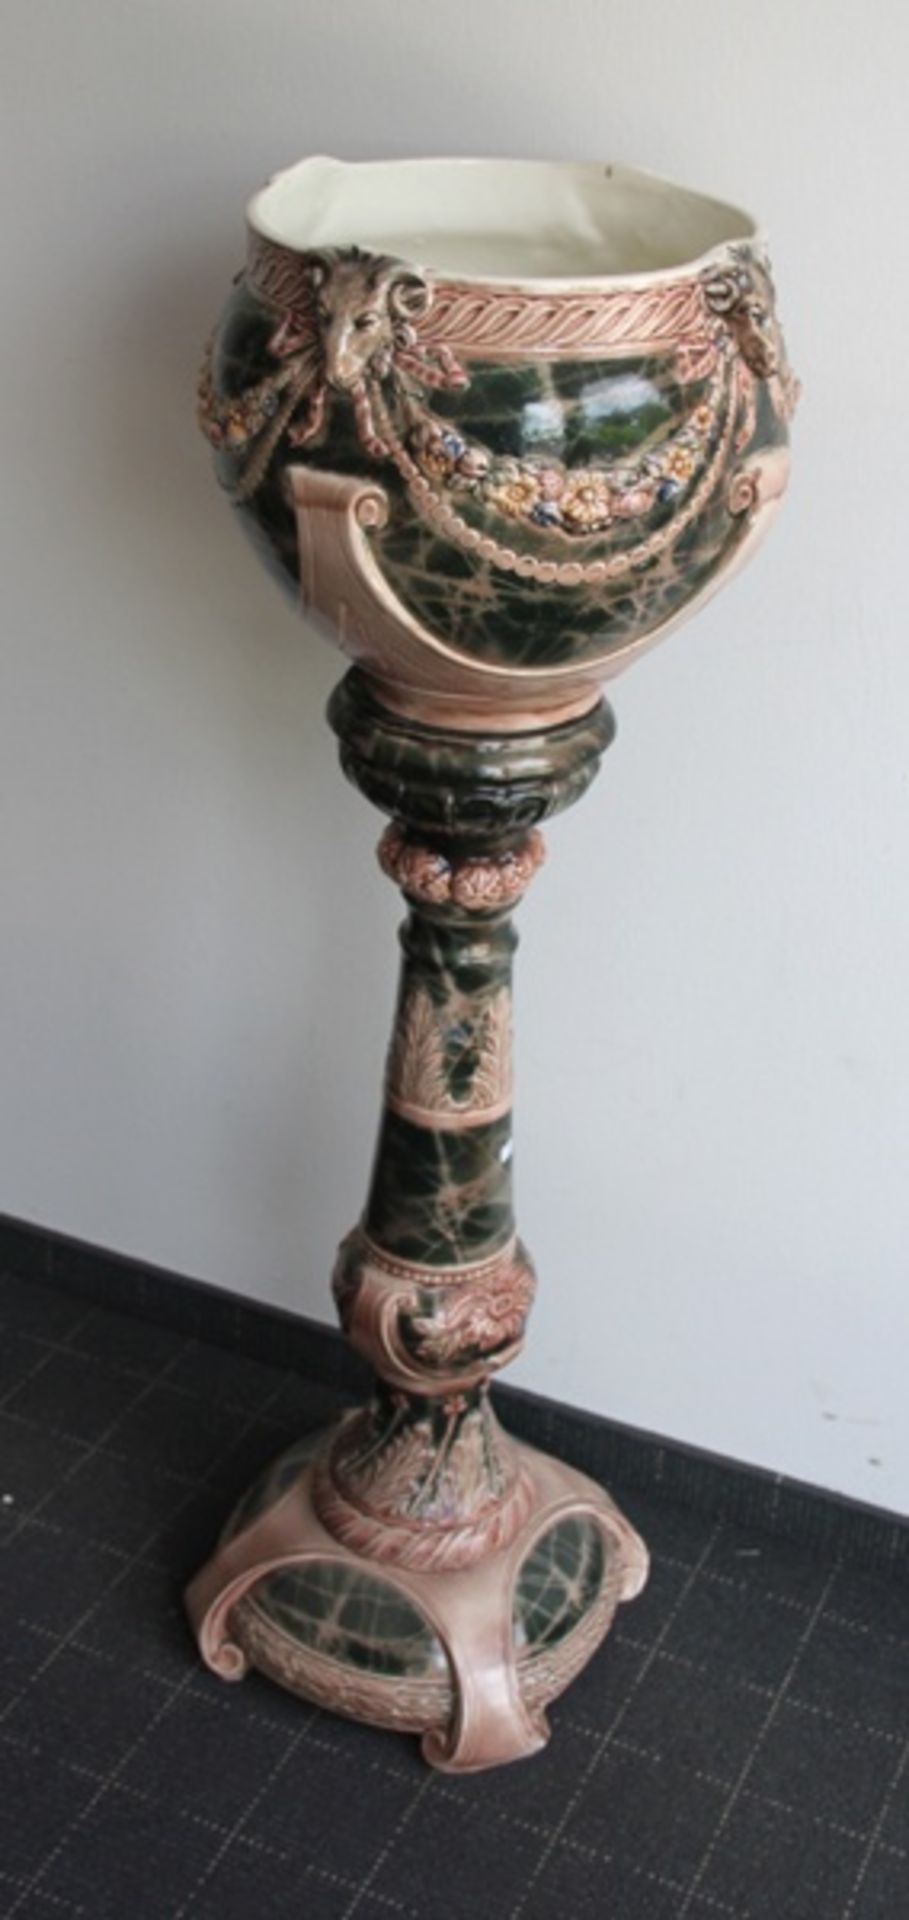 Blumensäule mit Cachepotum 1900, womöglich Villeroy & Boch, Keramik, Blumensäule mit großem